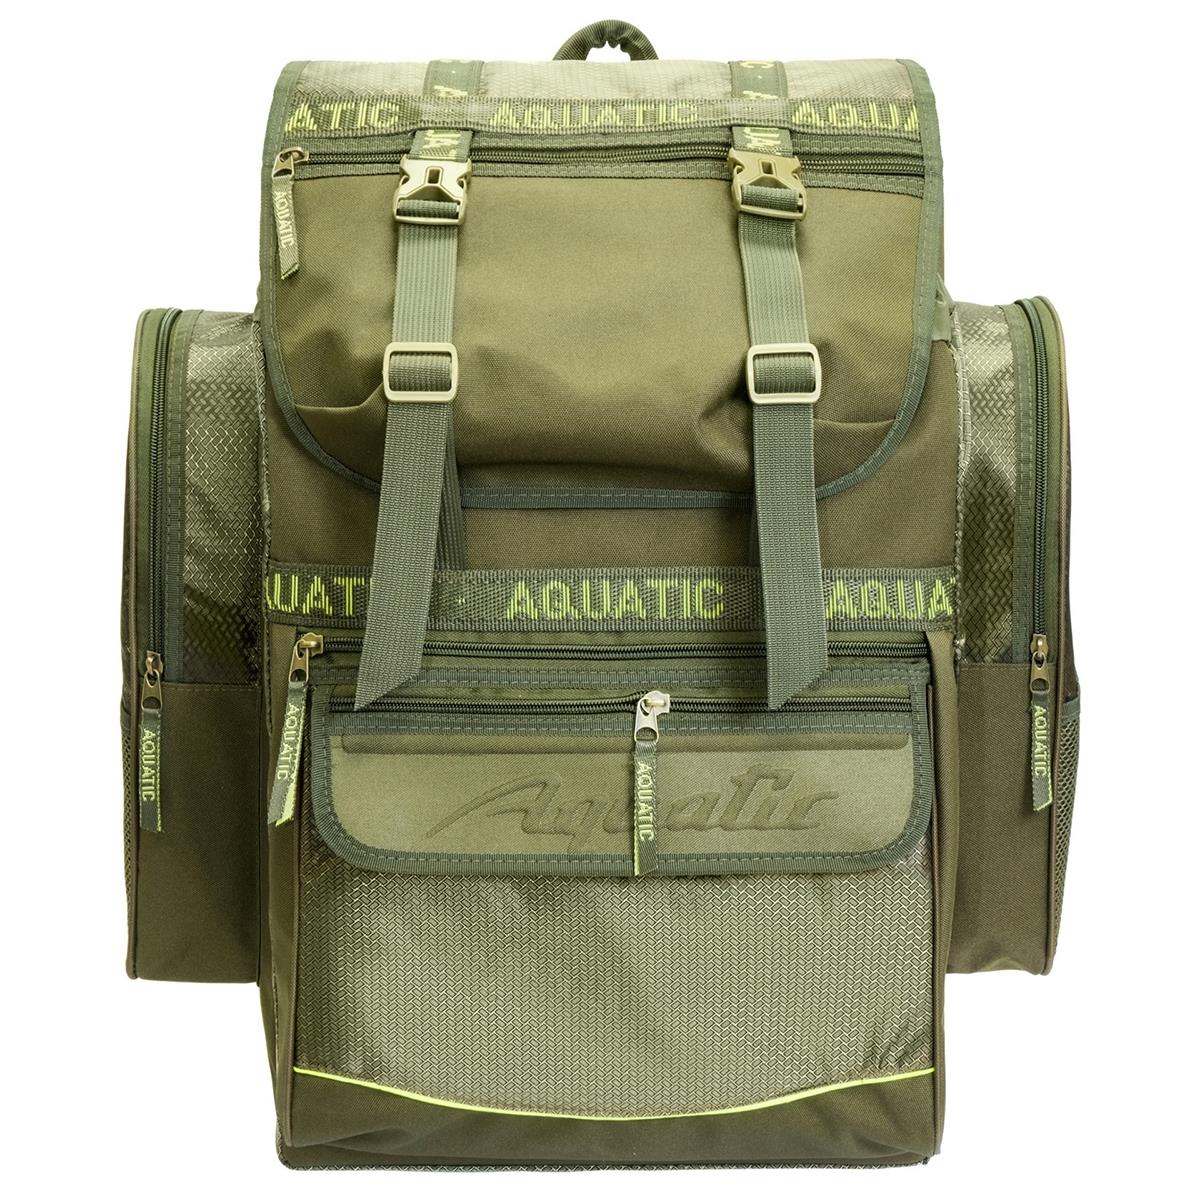 Рюкзак рыболовный (Р-60) Aquatic рюкзак рыболовный р 65 aquatic